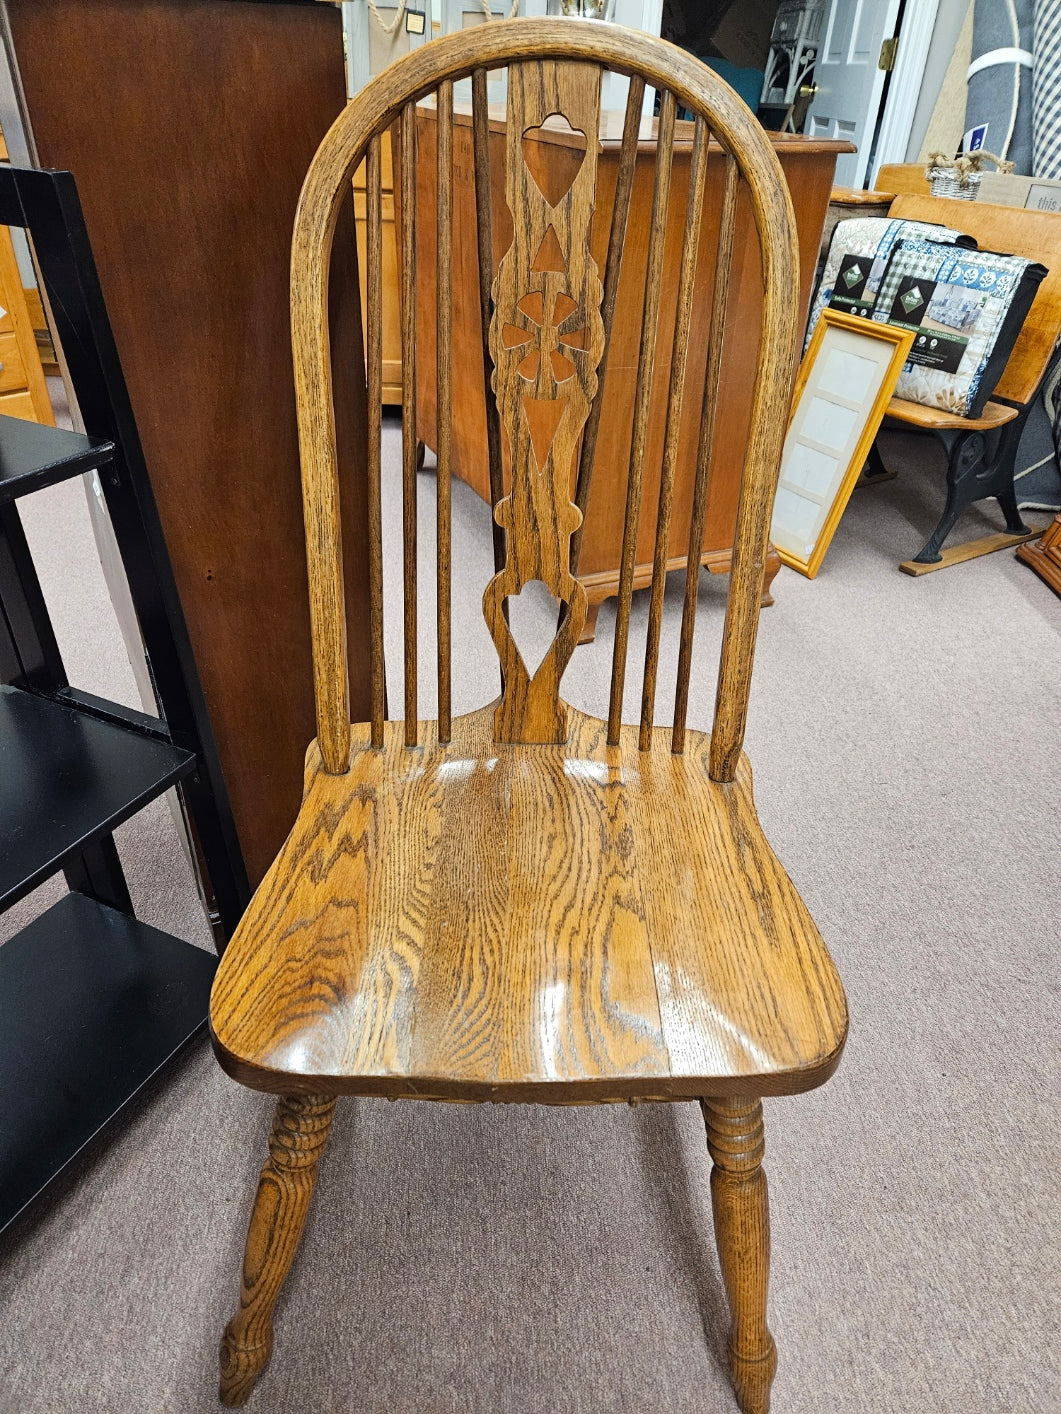 Oak Windsor Chair